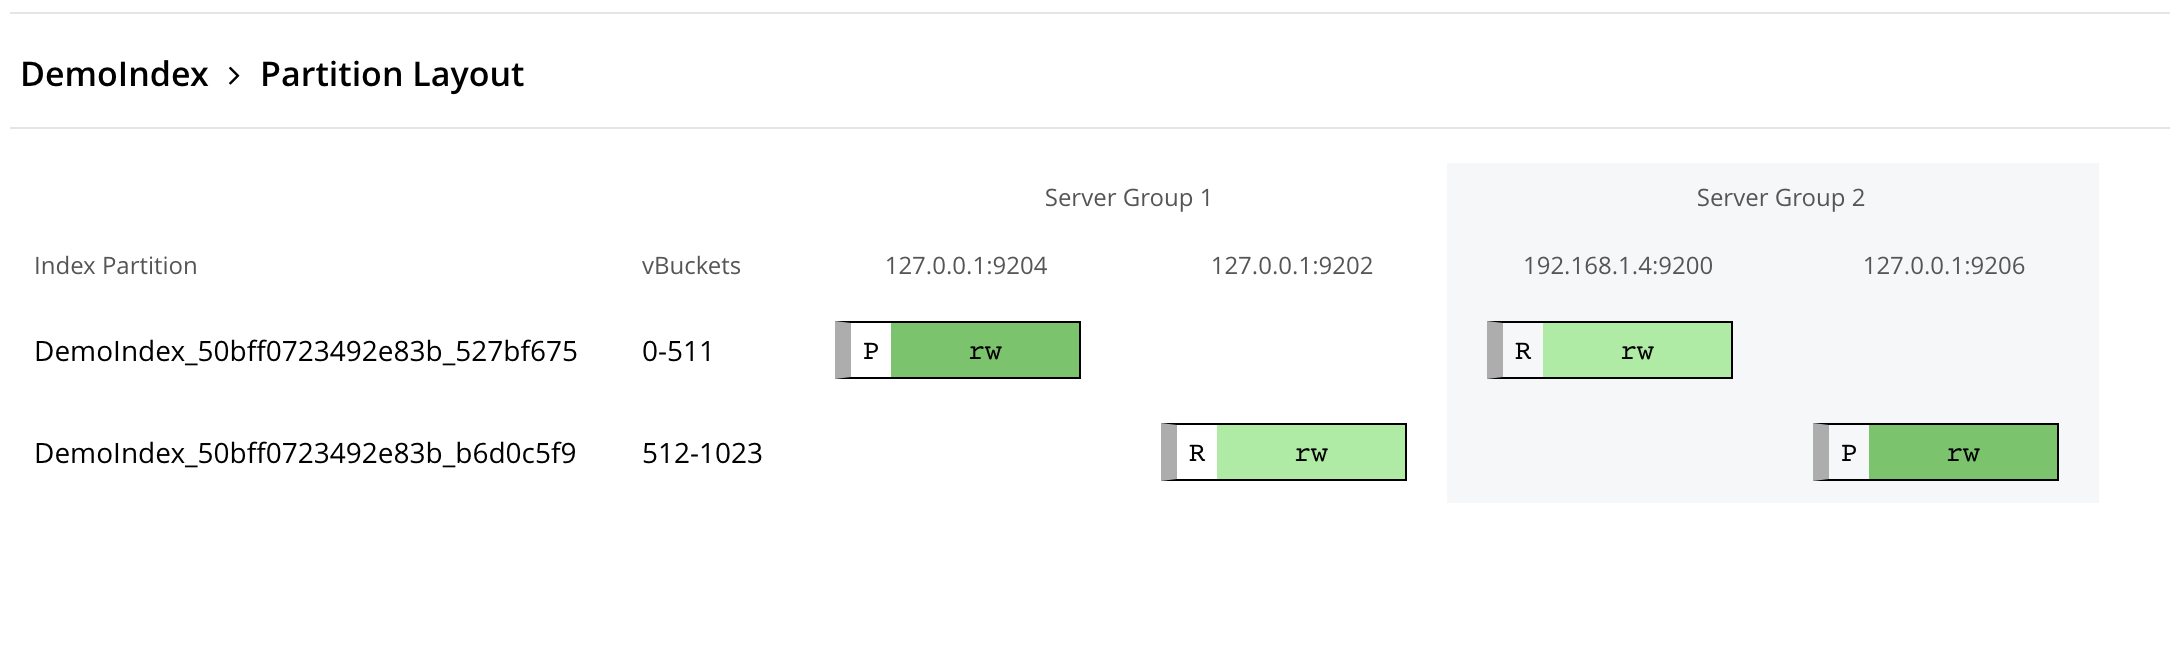 FTS index over server groups